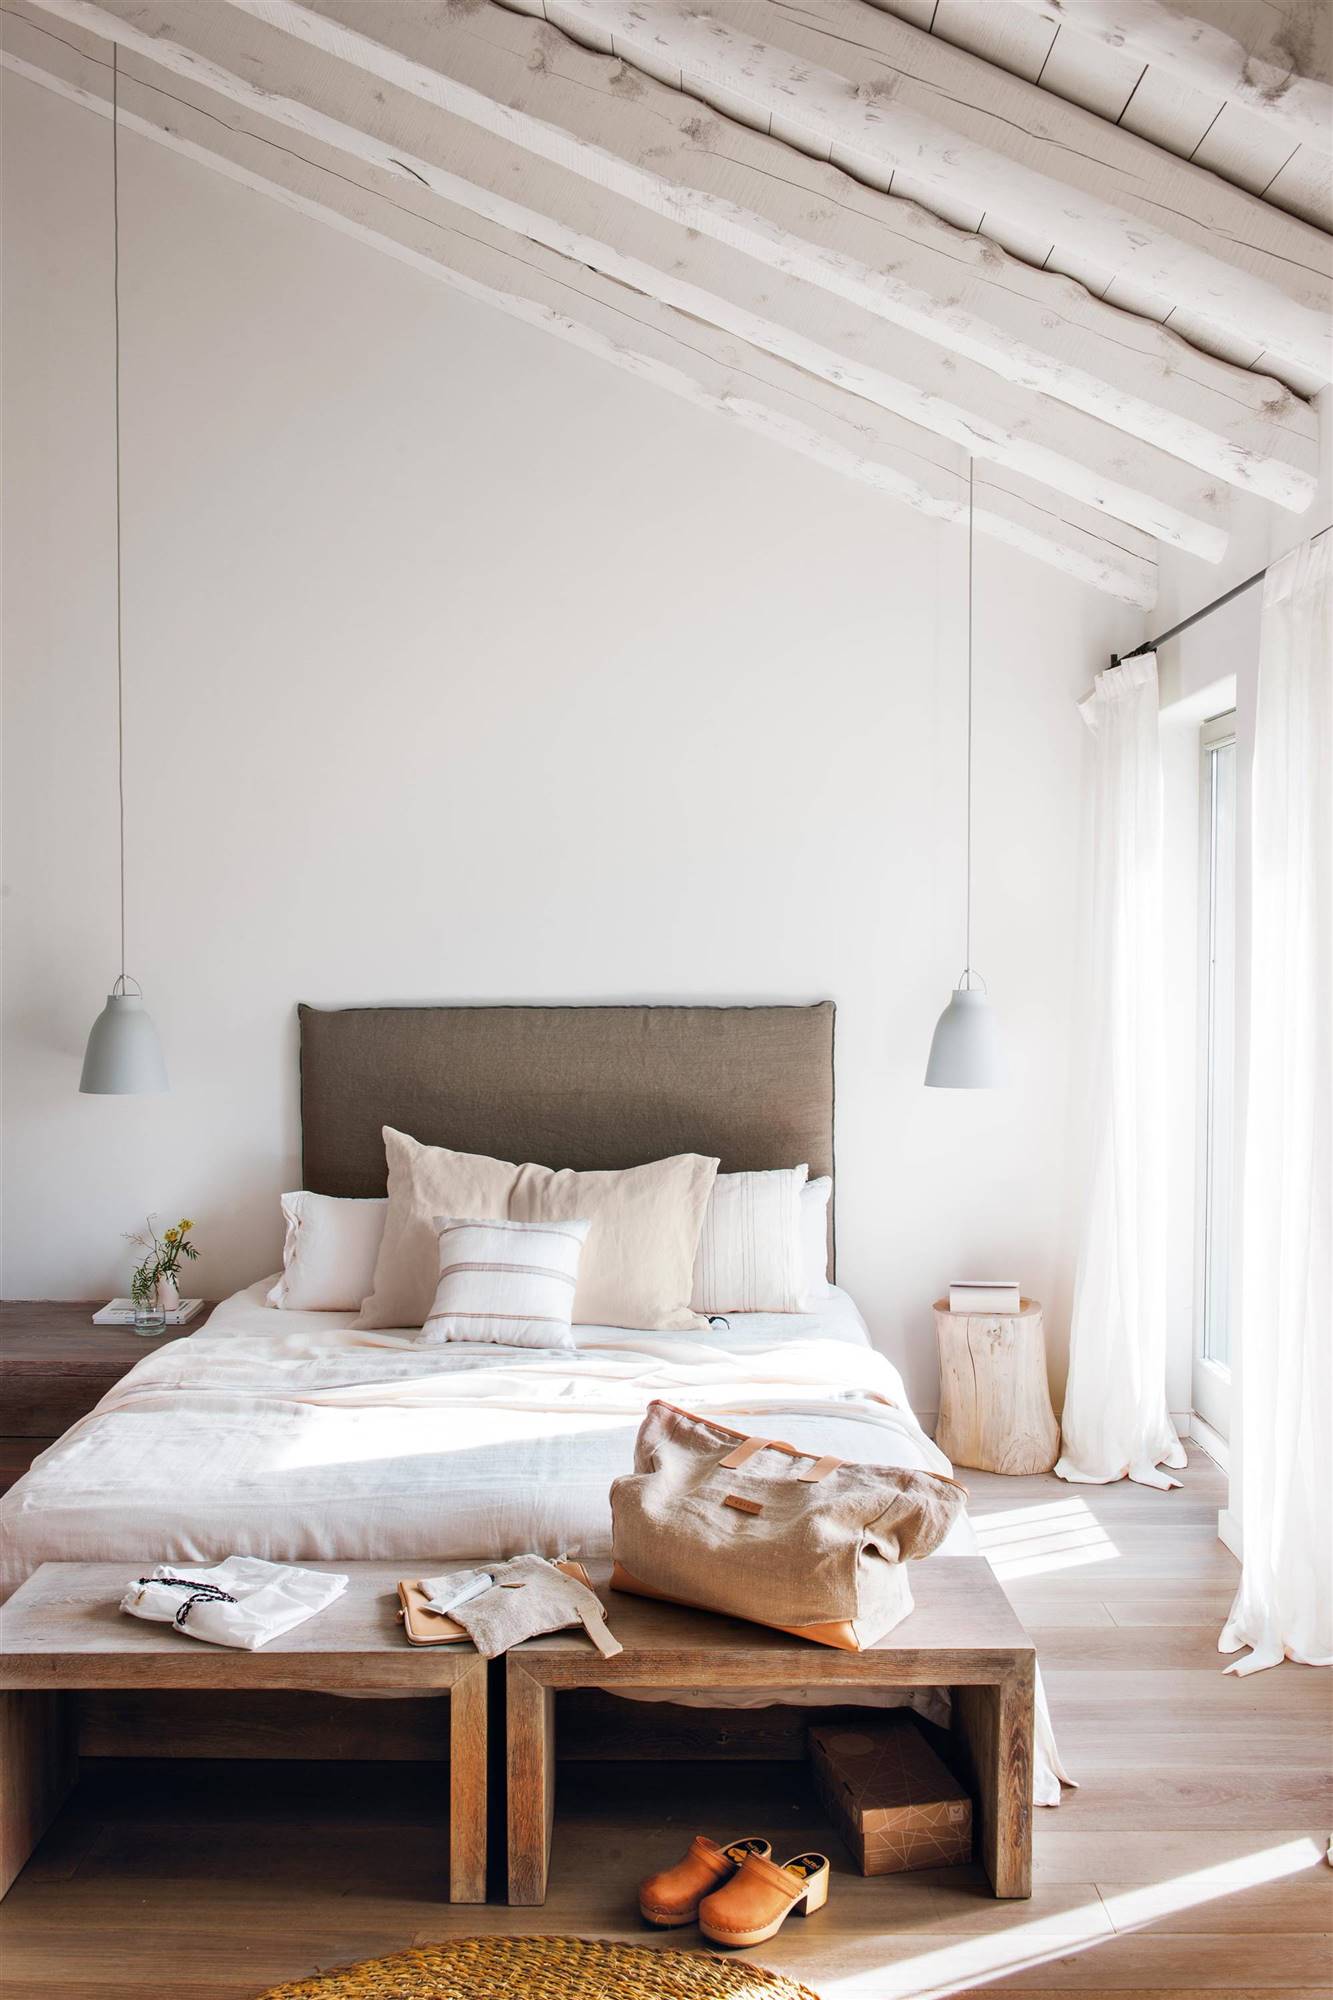 Dormitorio de estilo minimalista clásico en blanco con muebles de madera.  